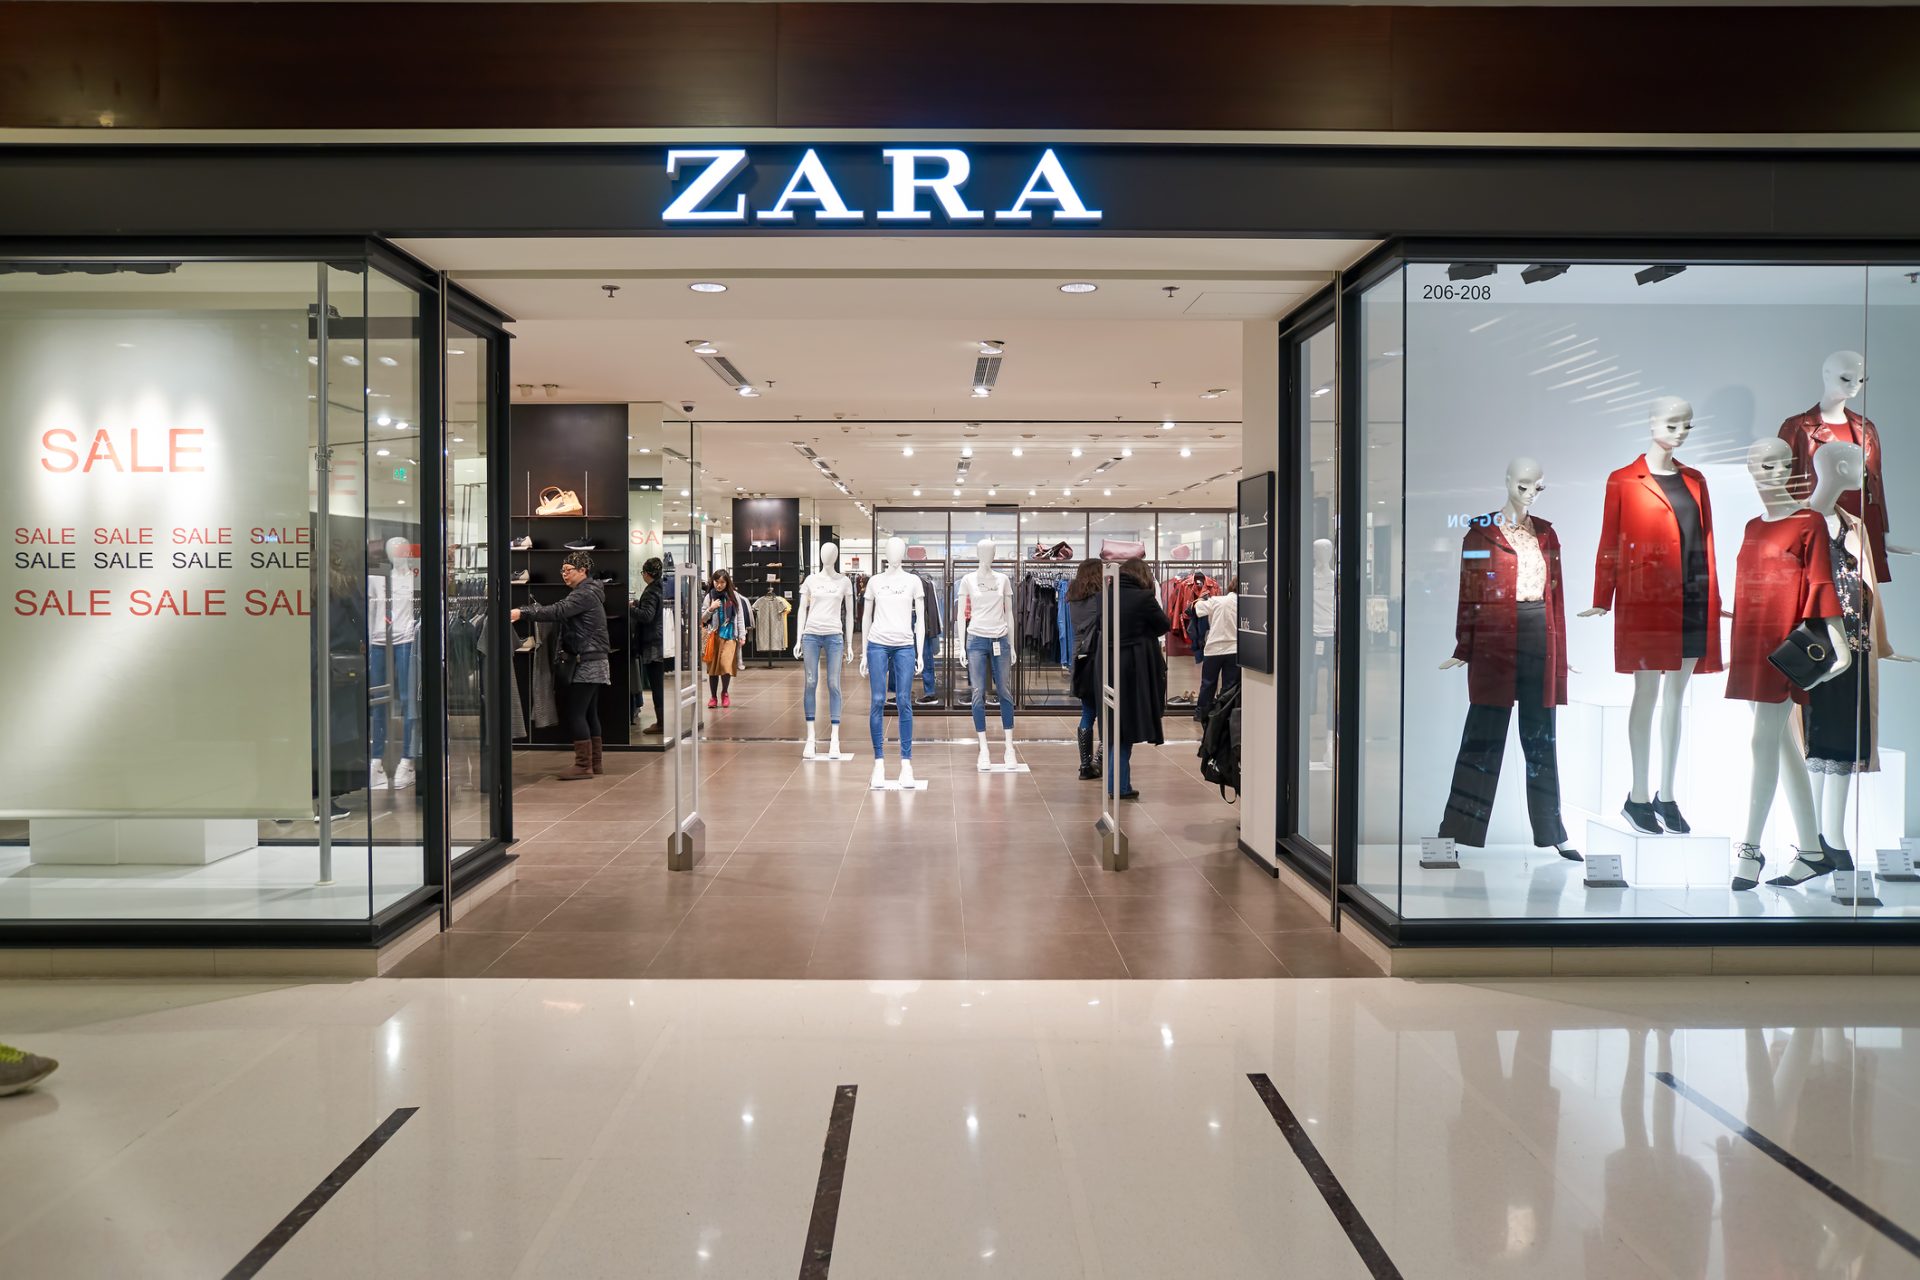 Zara no Brasil acusada de ter código para proibir entrada de clientes negros. Gerente é português